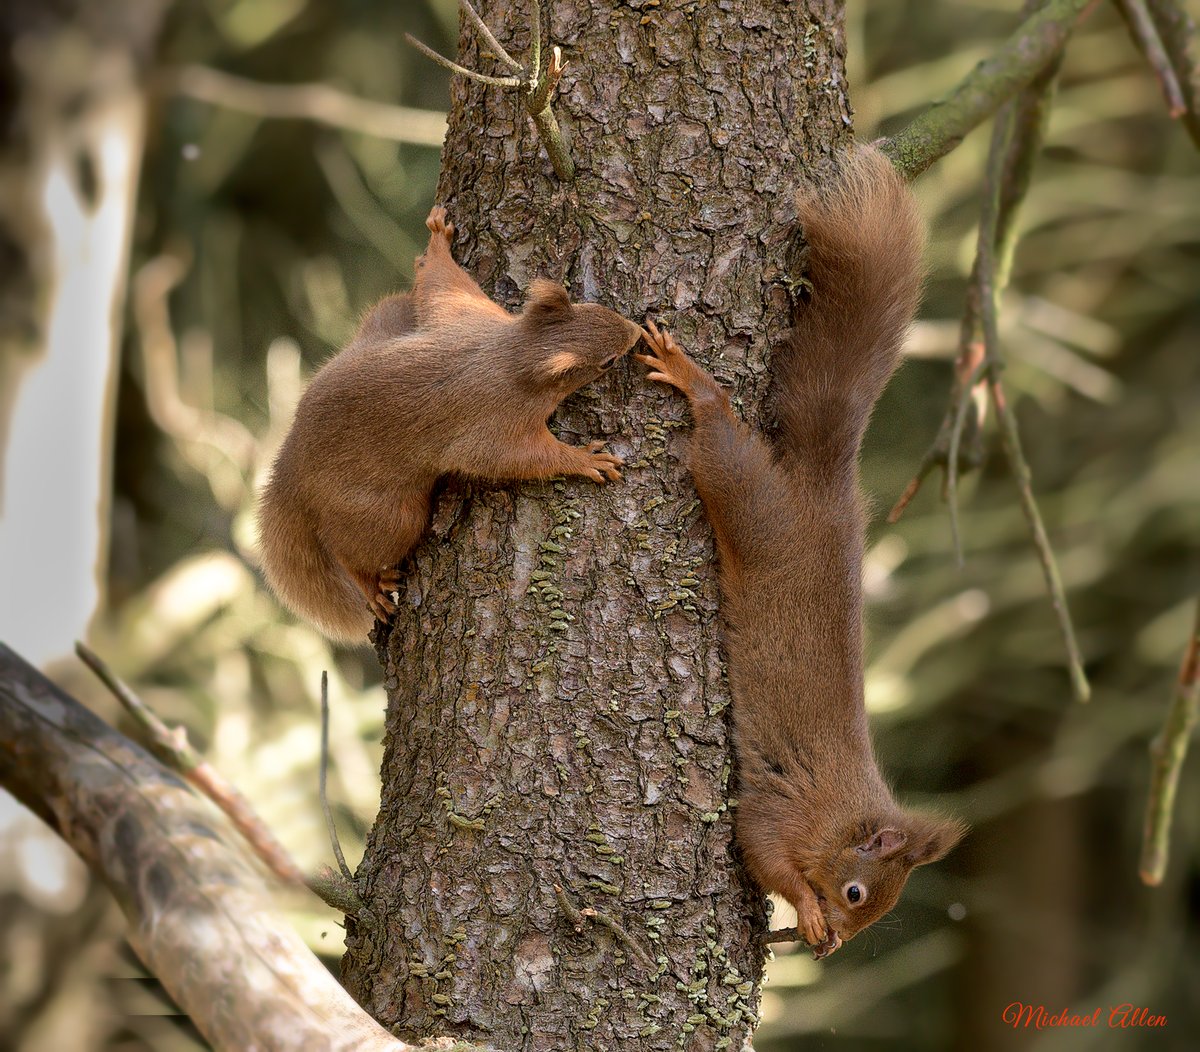 Havin' the craic! Photo Michael Allen.
#redsquirrels #nature #biodiversity #wildlifephotography